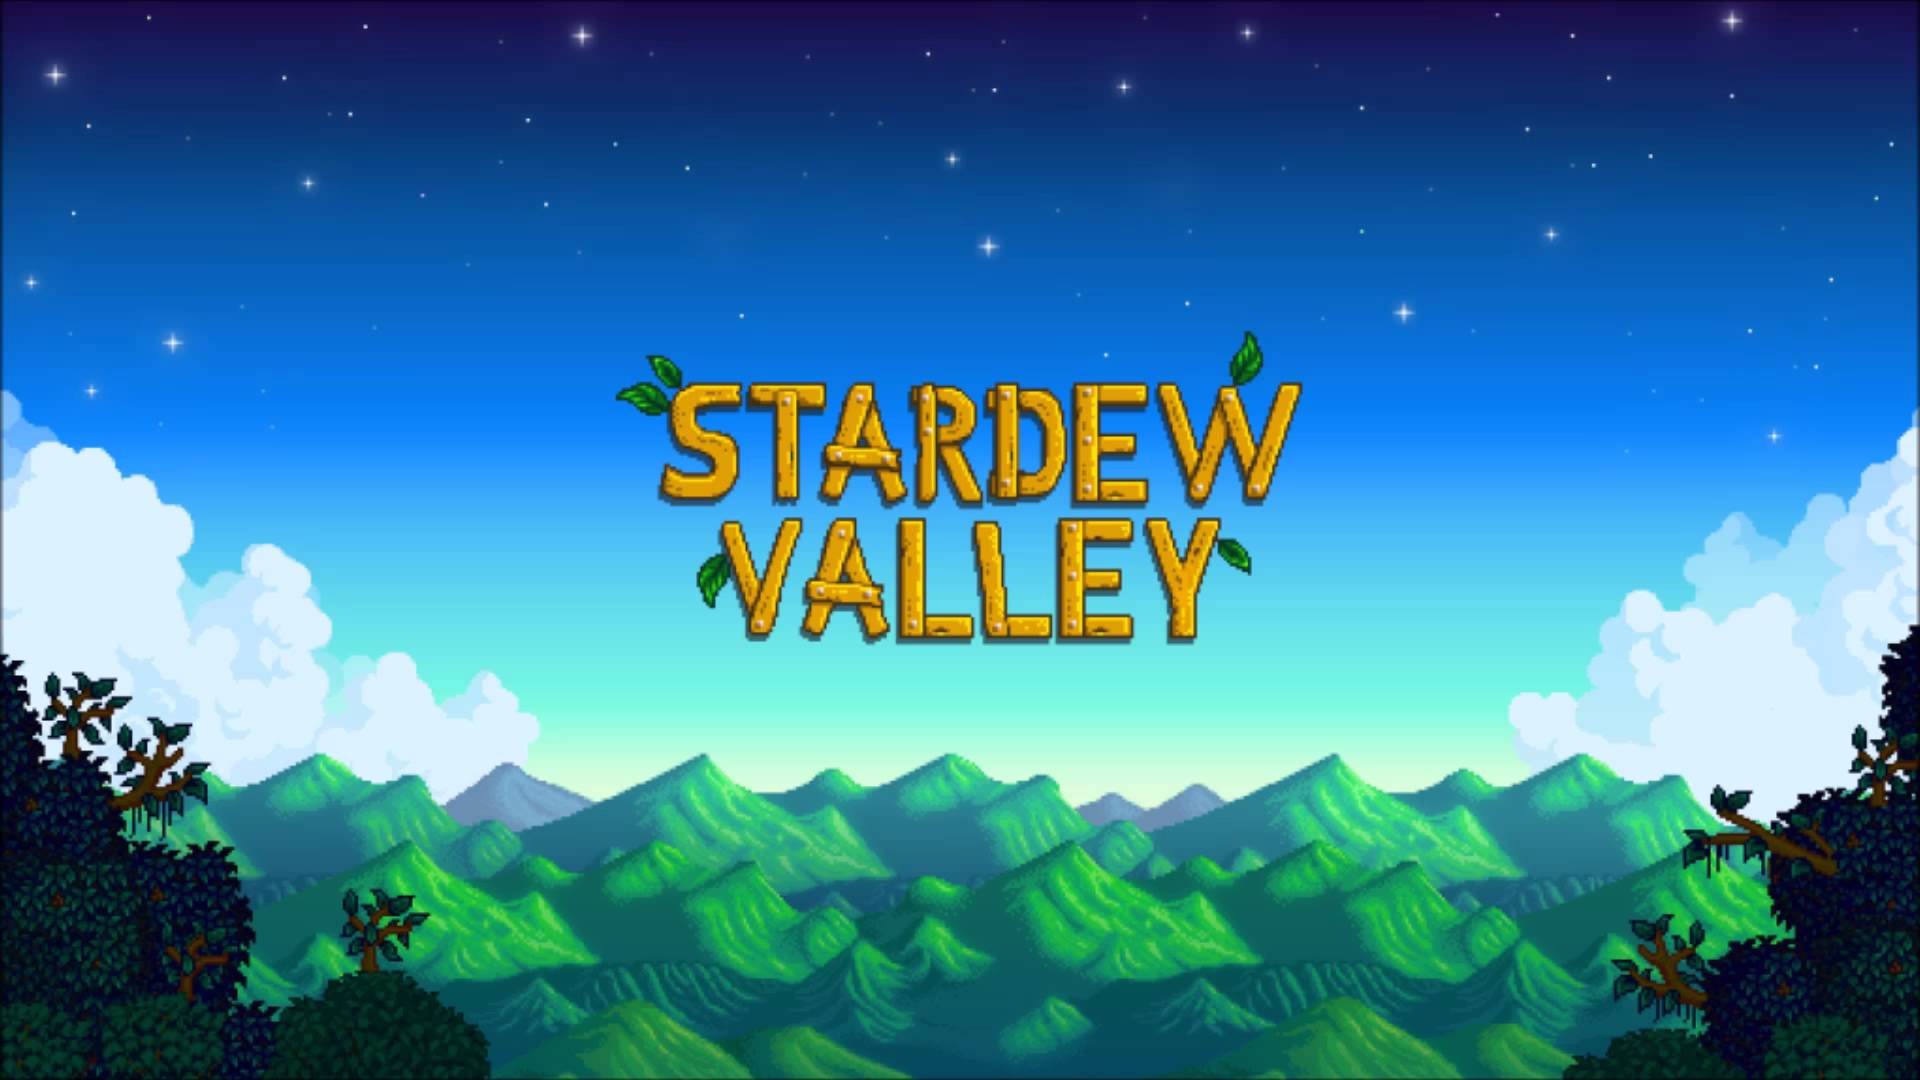 Stardew Valley - Forums - Stardew Valley Speed Run Categories - Speedrun